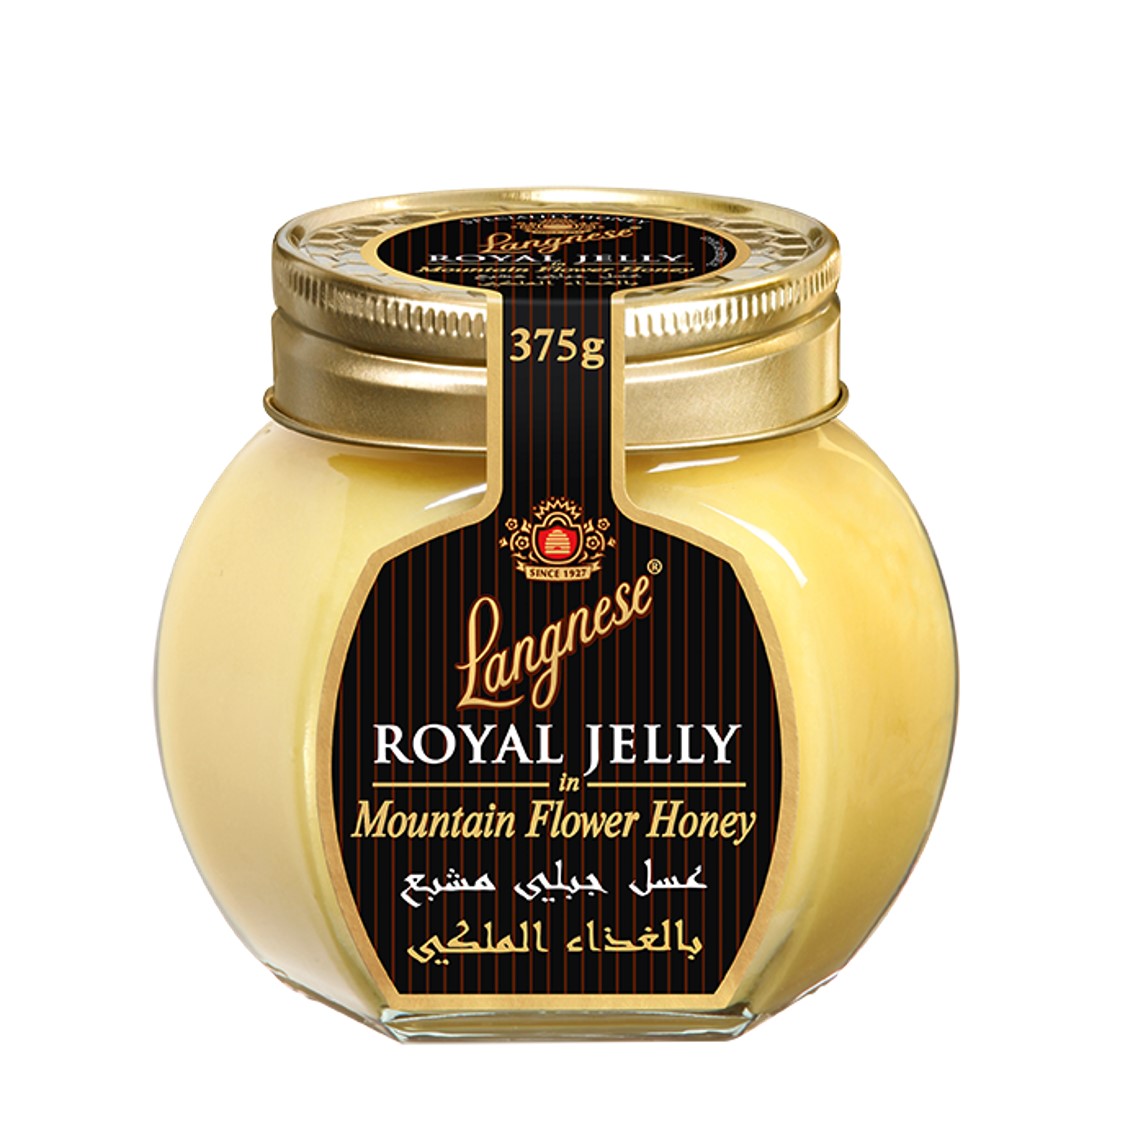 Langnese Royal Jelly in Mountain Flower Honey (375g)